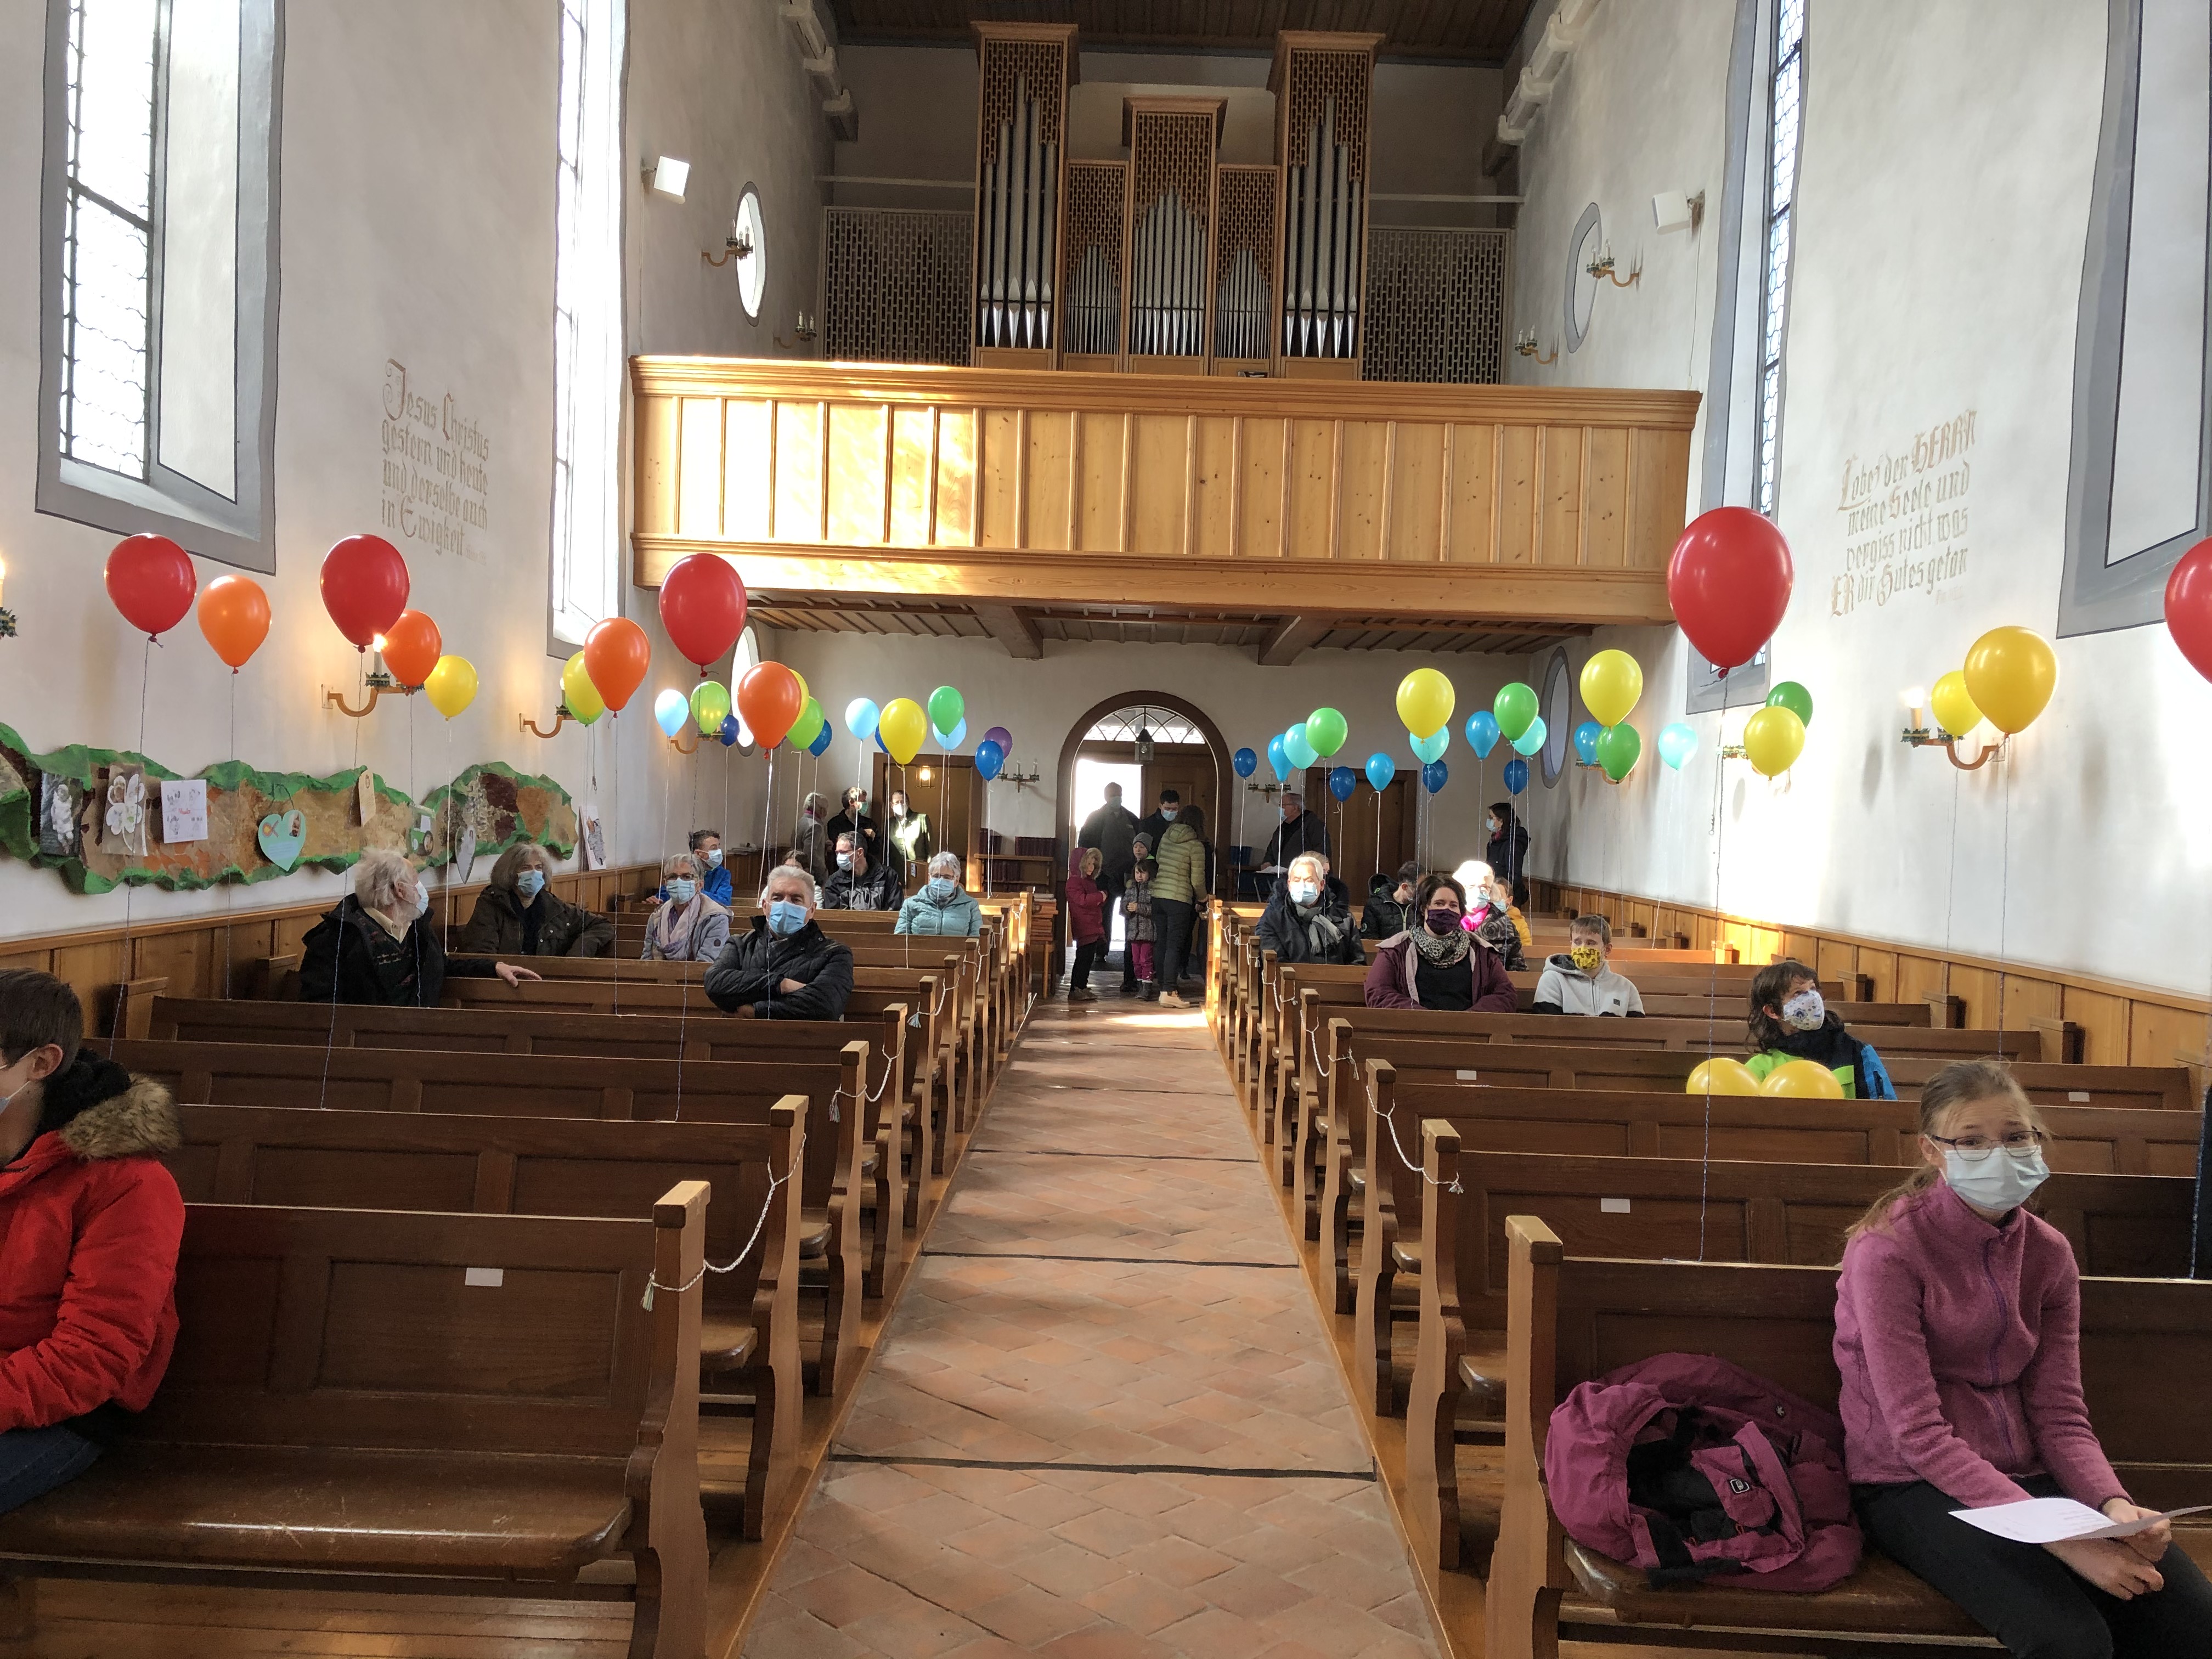 Ballone in den Regenbogenfarben dekorierten die Kirche